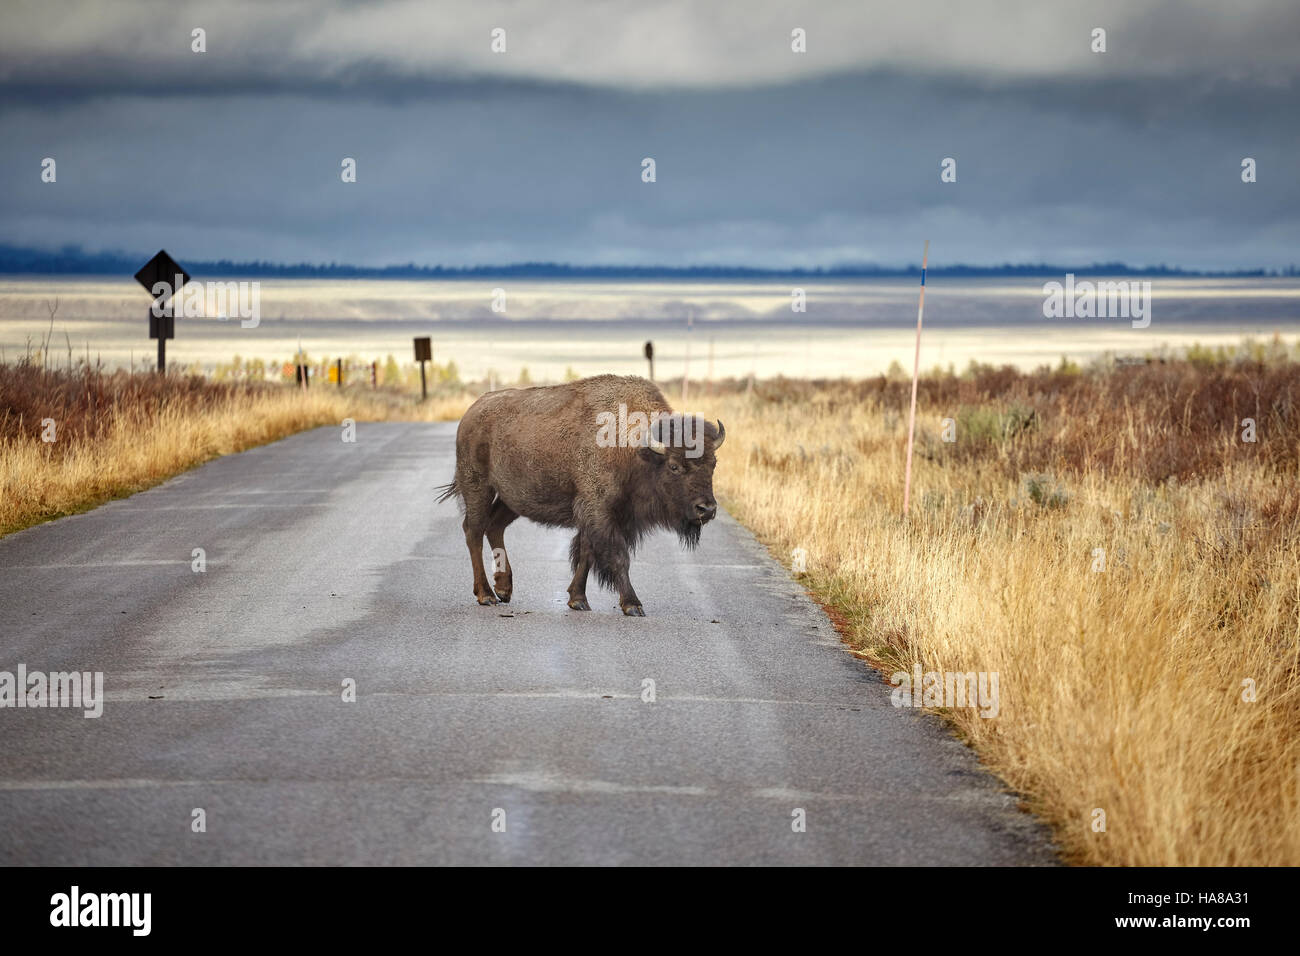 American el bisonte (Bison bison) cruce de carretera en parque nacional Grand Teton, Wyoming, Estados Unidos. Foto de stock